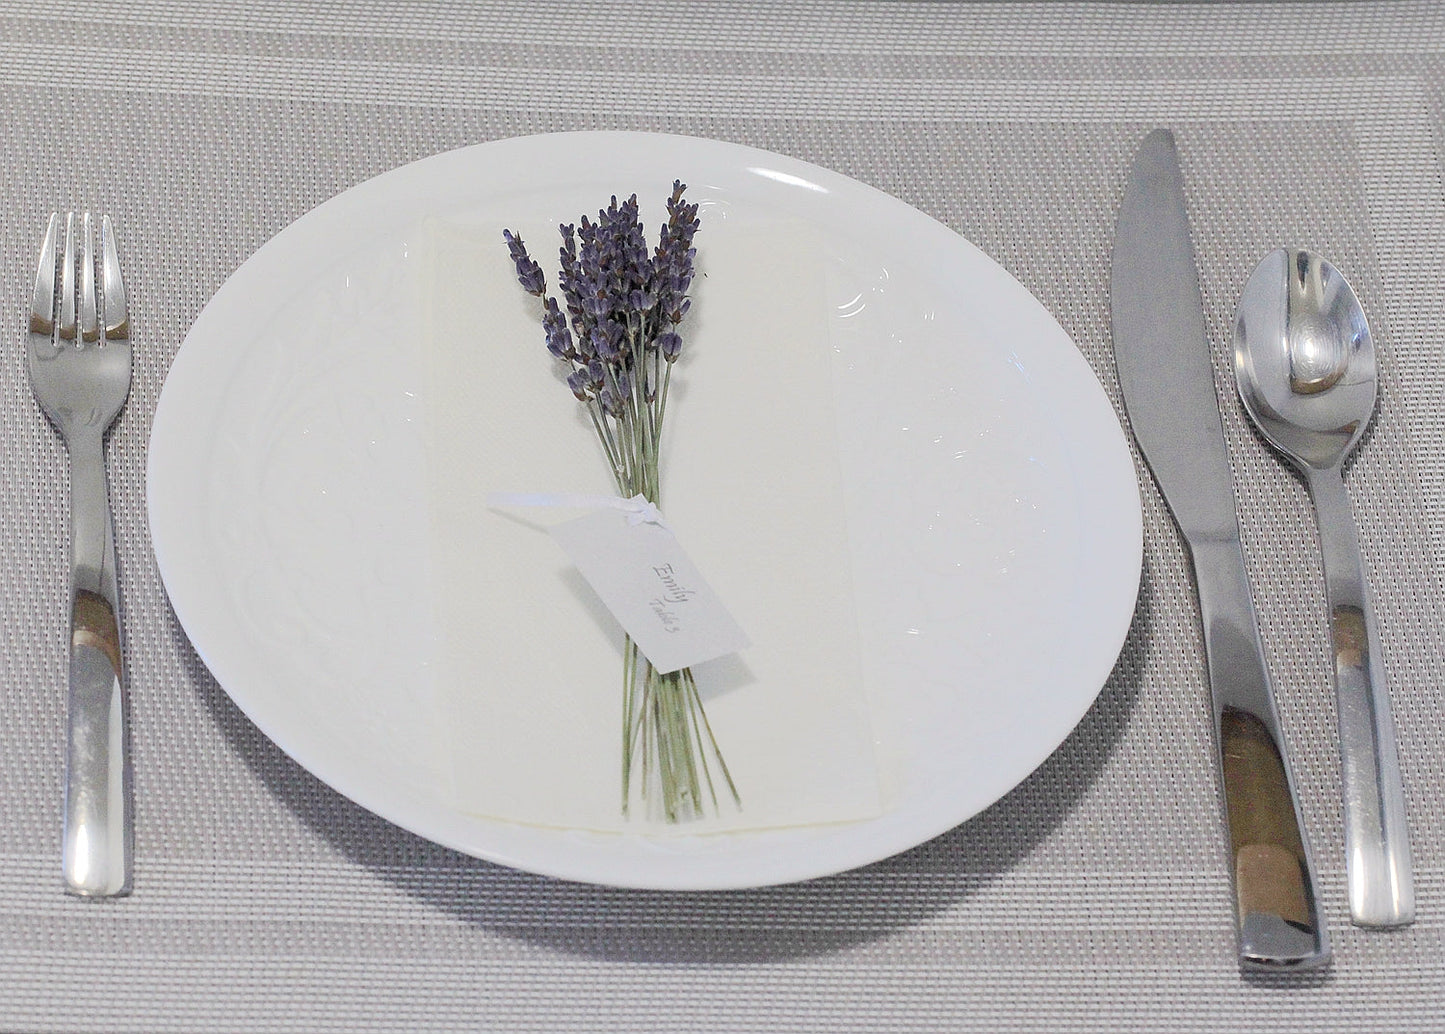 Napkin Bouquet: Oat Mini D10 | AM Lavender